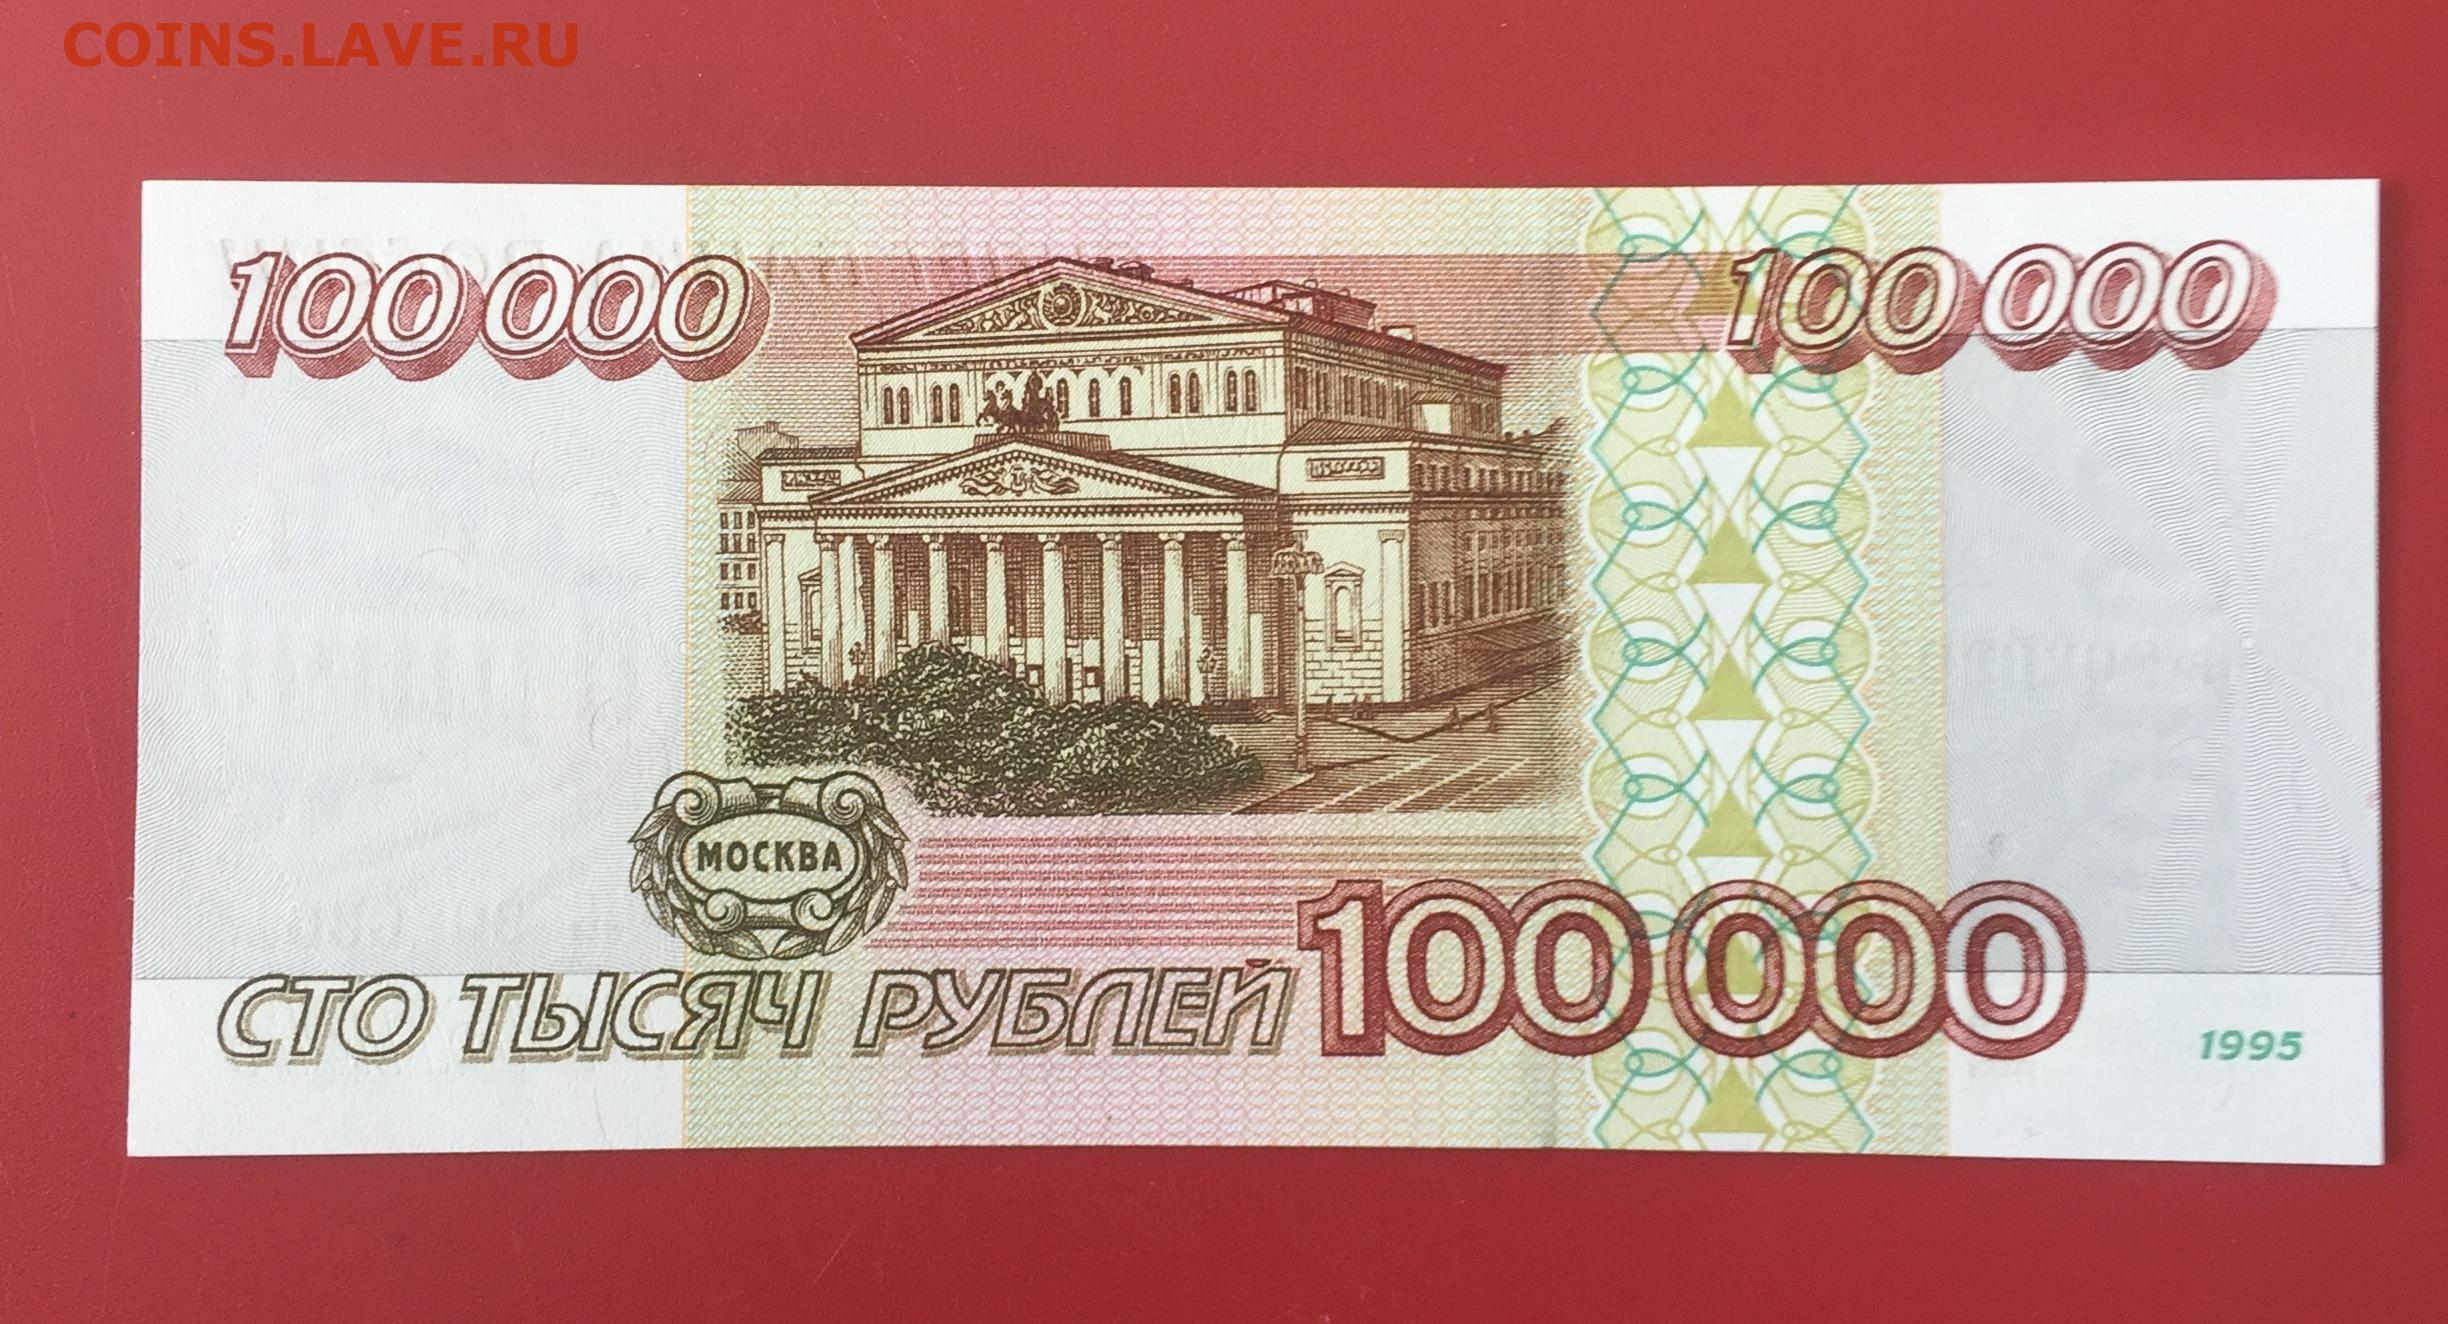 70000 российских рублей в белорусских рублях. 10 000 Рублей. 100000 Рублей в 1998 году. Ноль рублей. Рубль России.